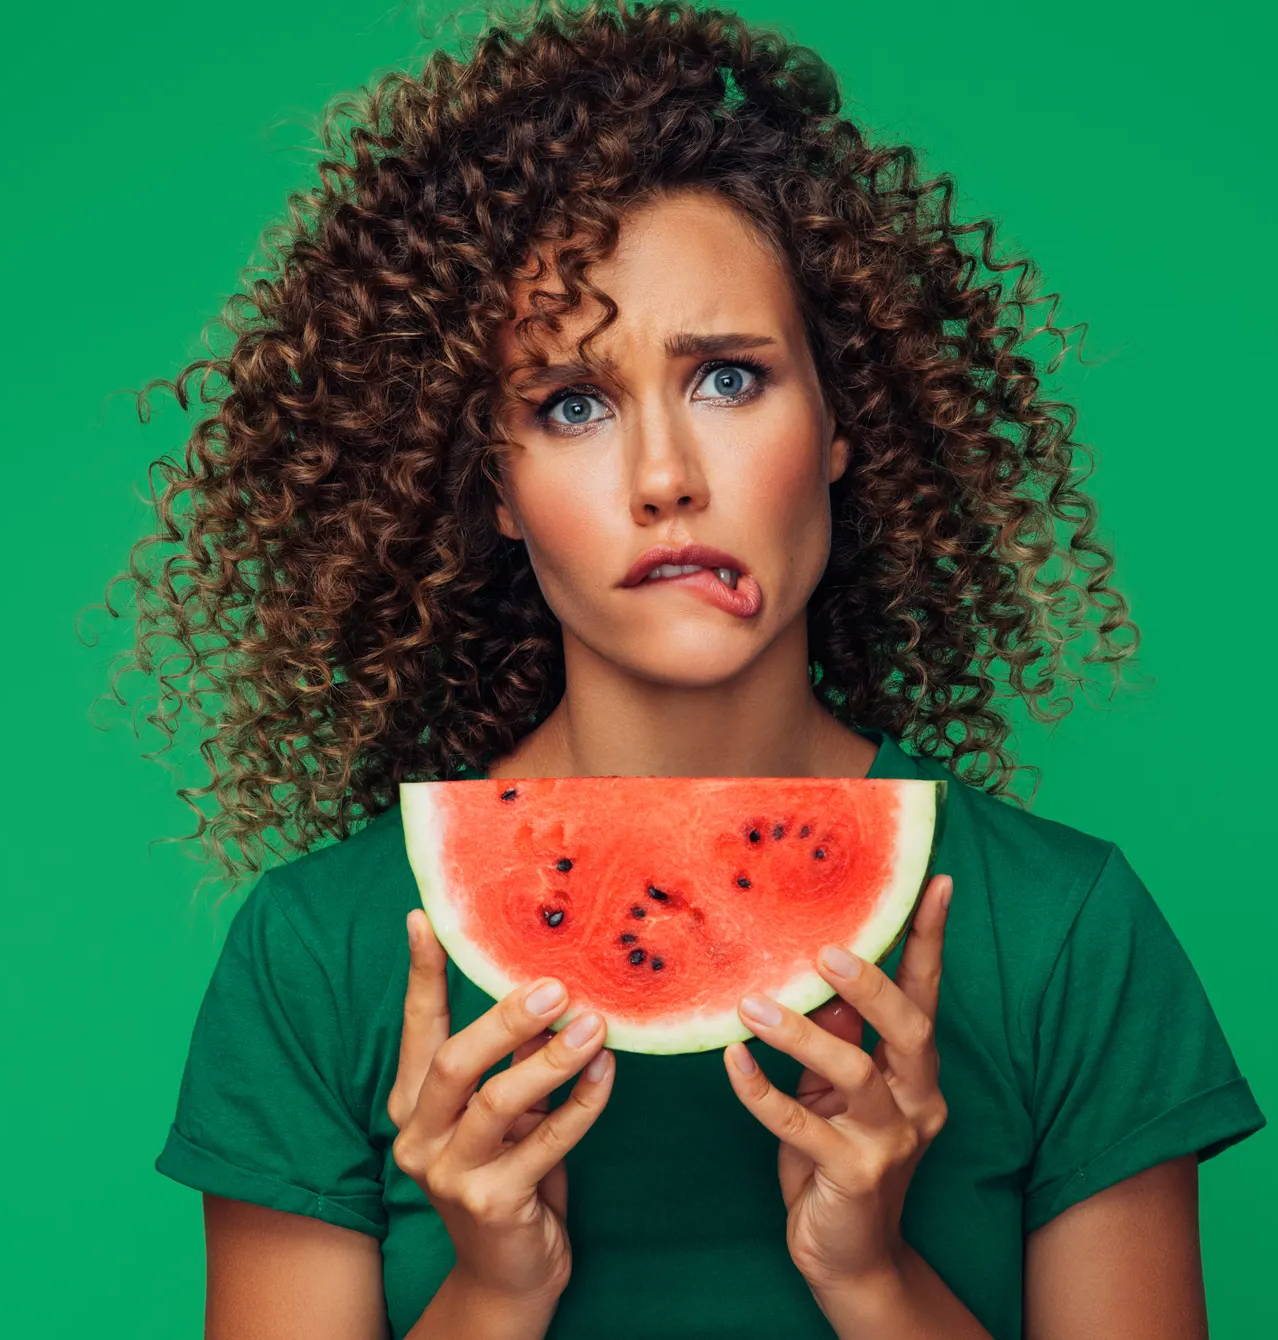 Was ist das orale Allergiesyndrom? Es könnte dieser Frau ein Kribbeln im Mund verursachen, wenn sie Heuschnupfen hat und ihre Wassermelone isst. 